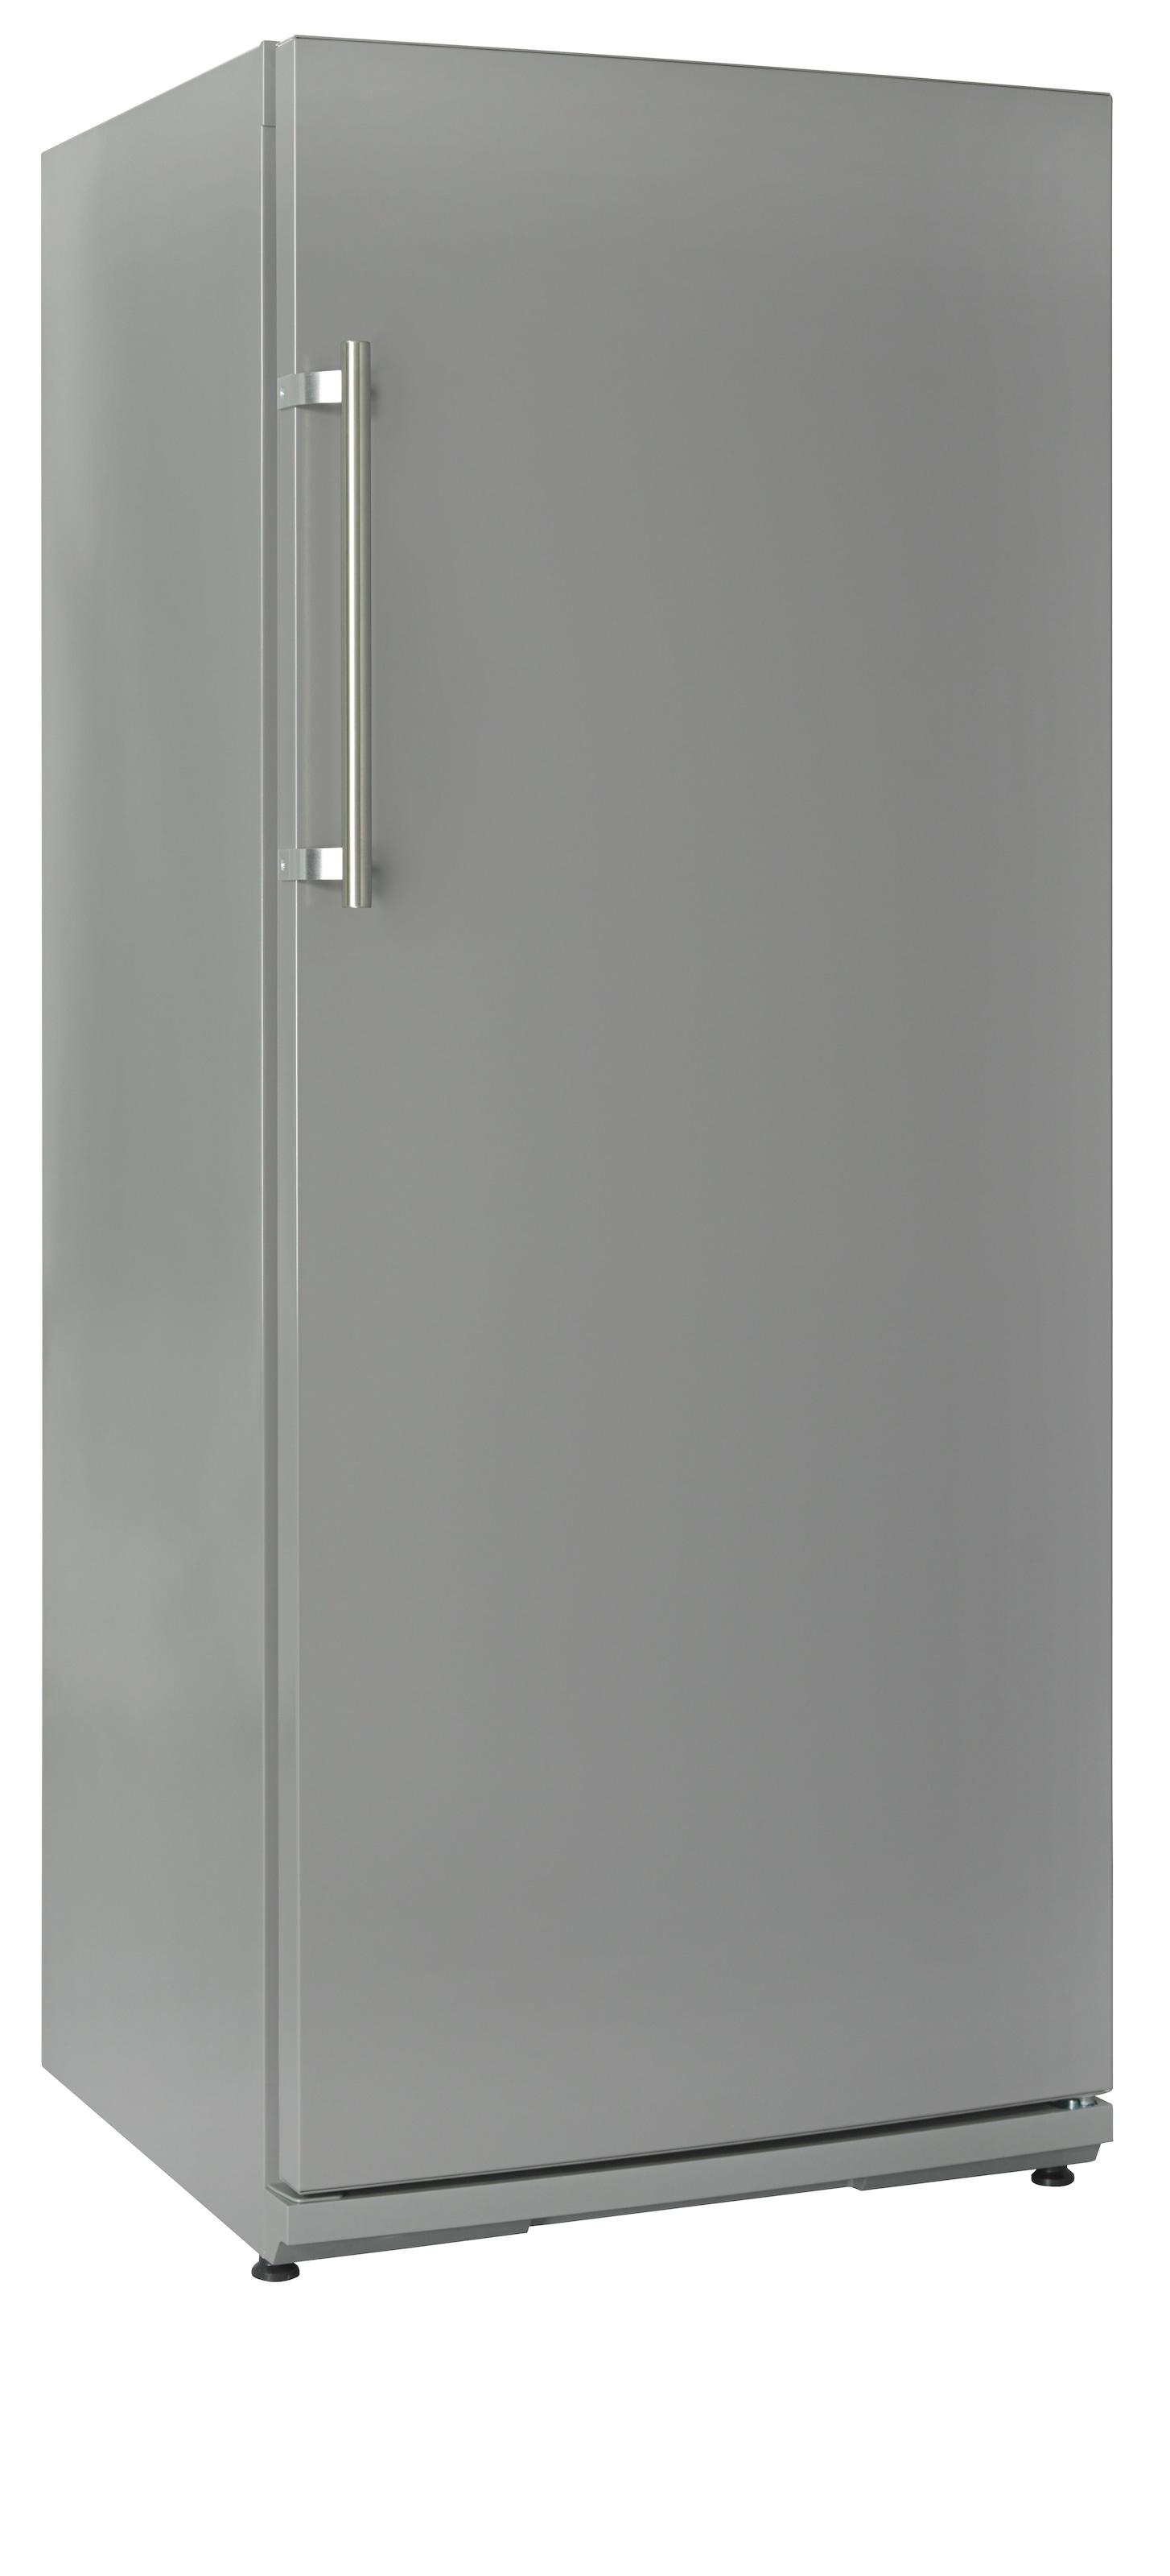 NABO Getränkekühlschrank, FK 2540, 145 cm hoch, 60 cm breit